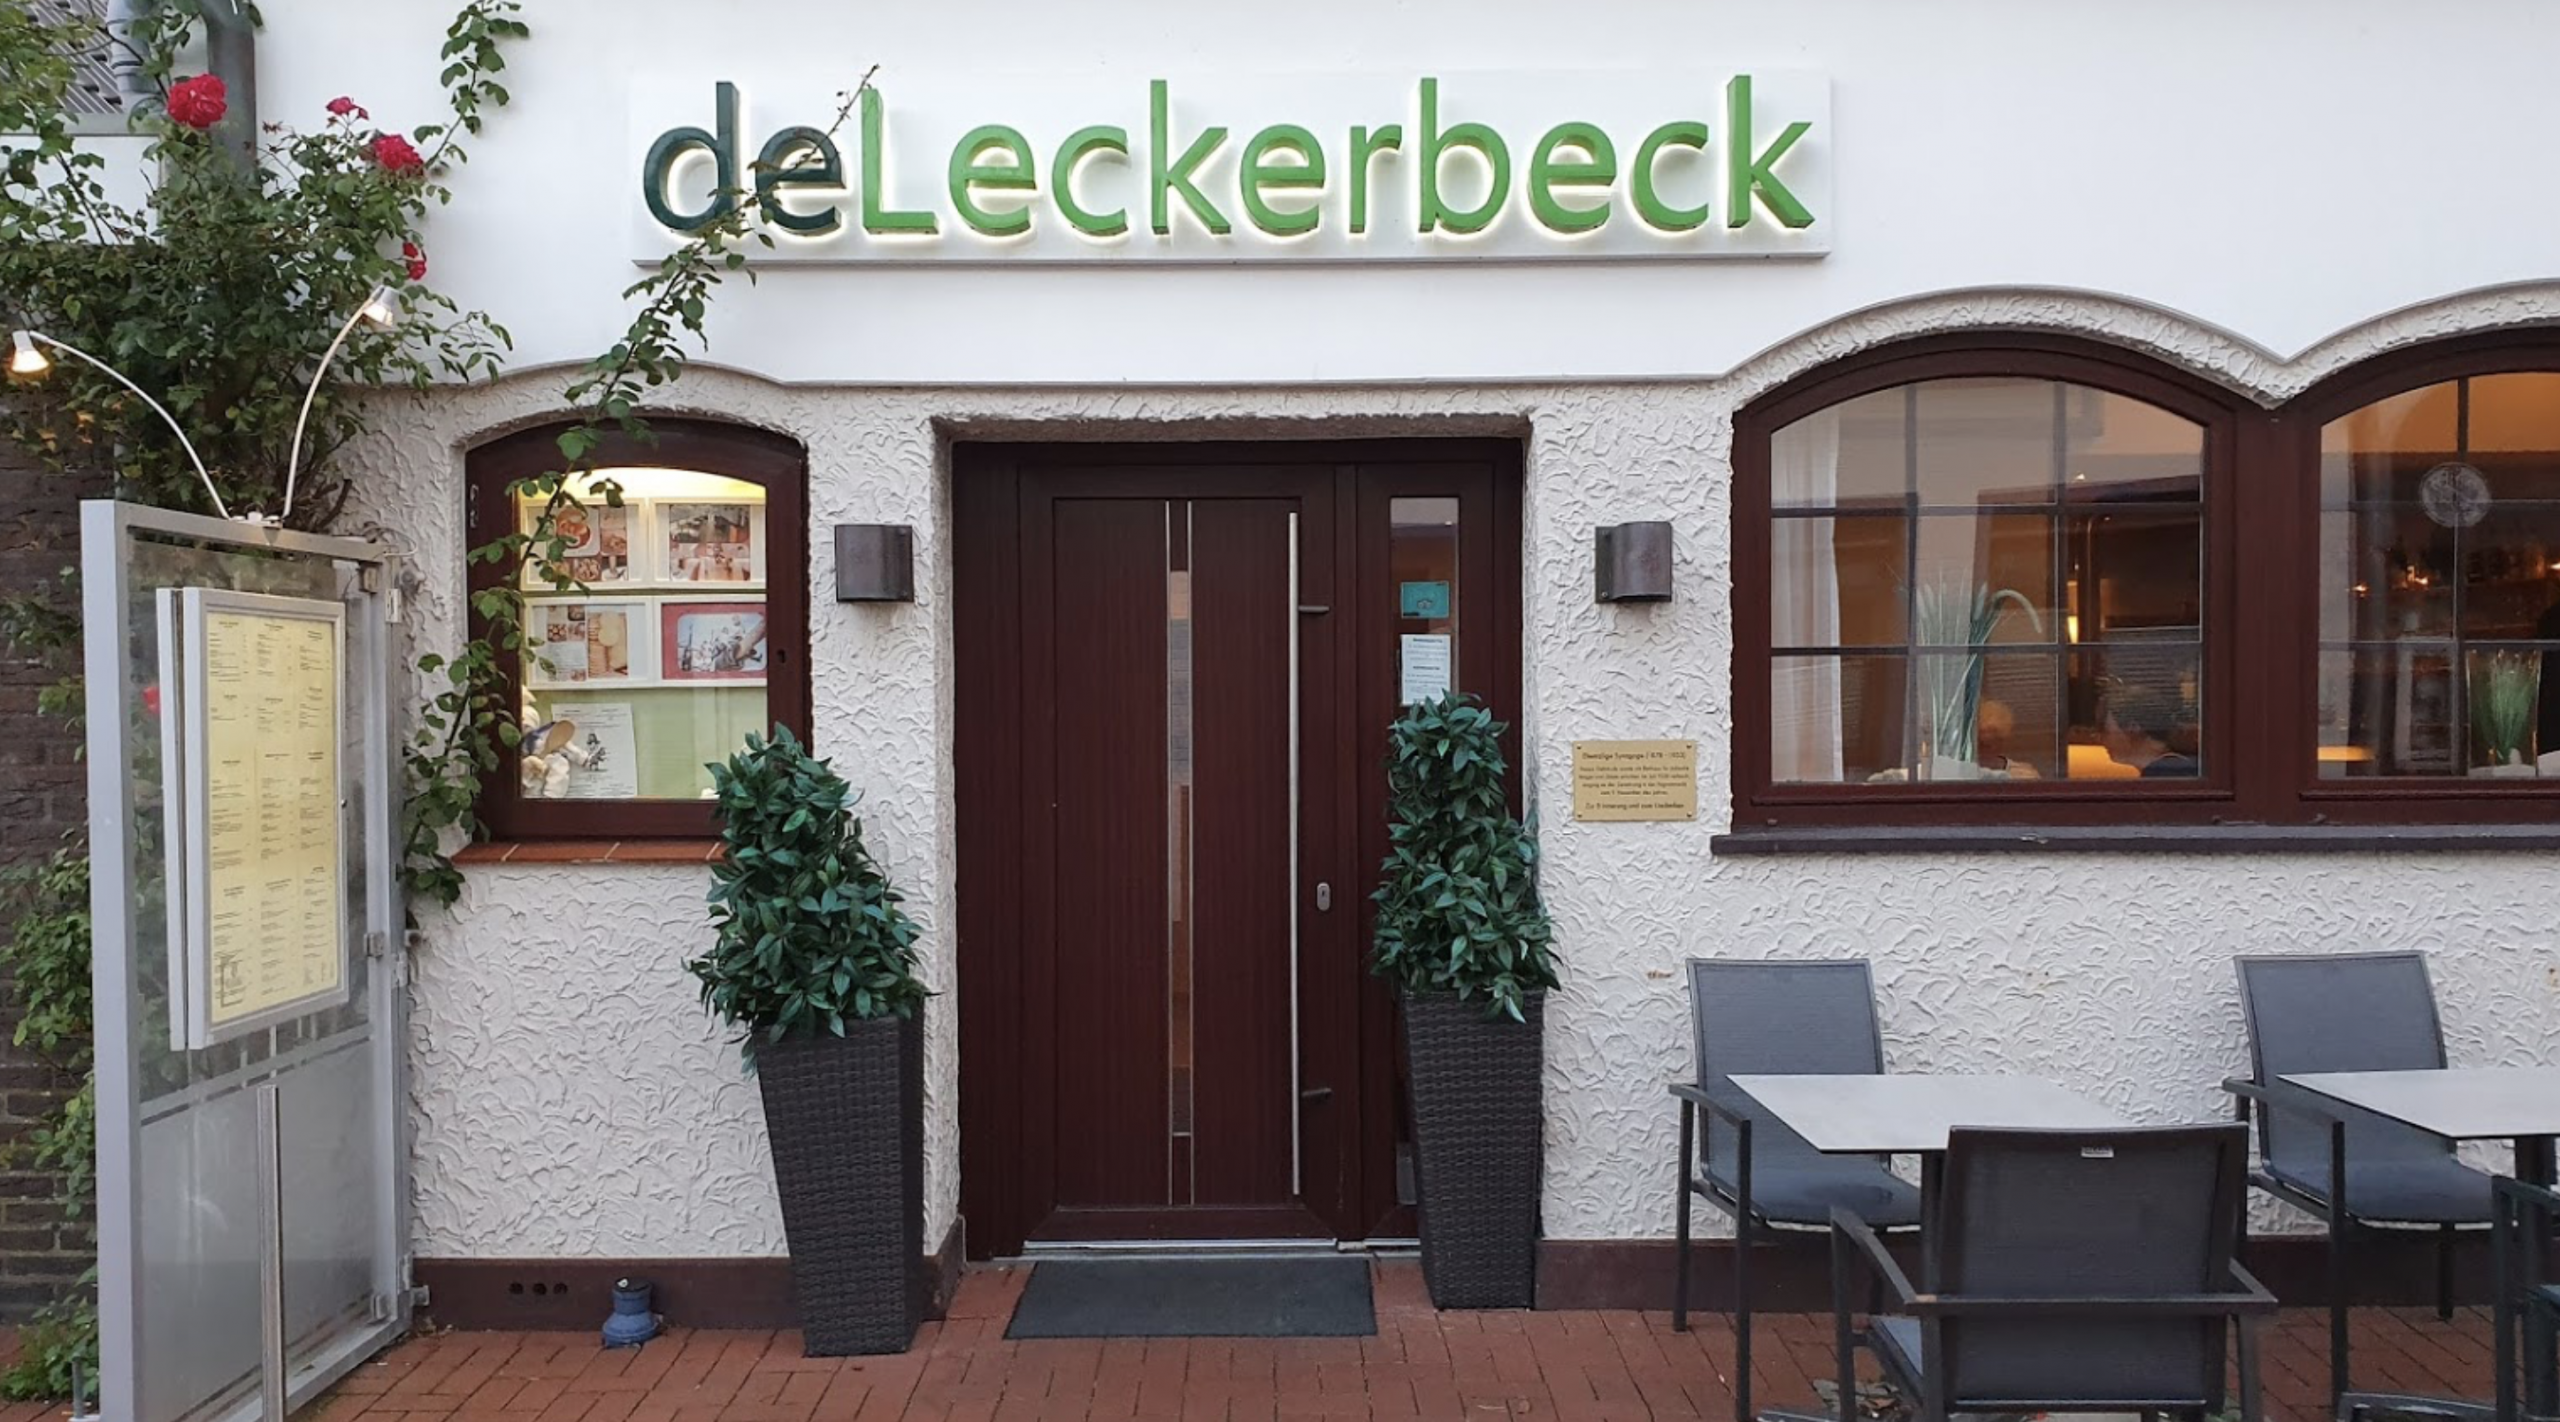 De Leckerbeck